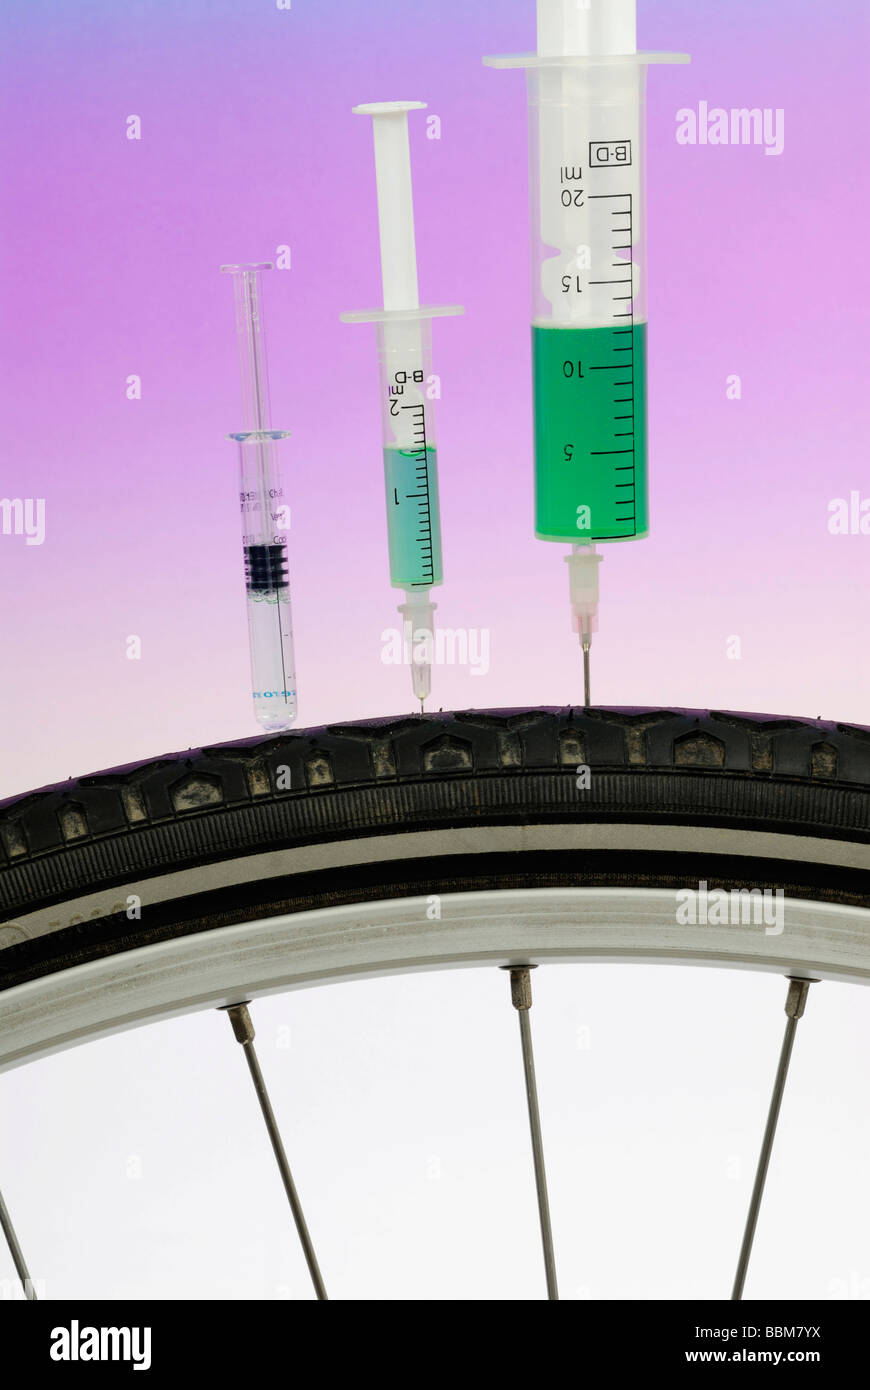 Gli aghi di iniezione in un ciclo di corsa pneumatico, immagine simbolica per il doping nel ciclismo Foto Stock